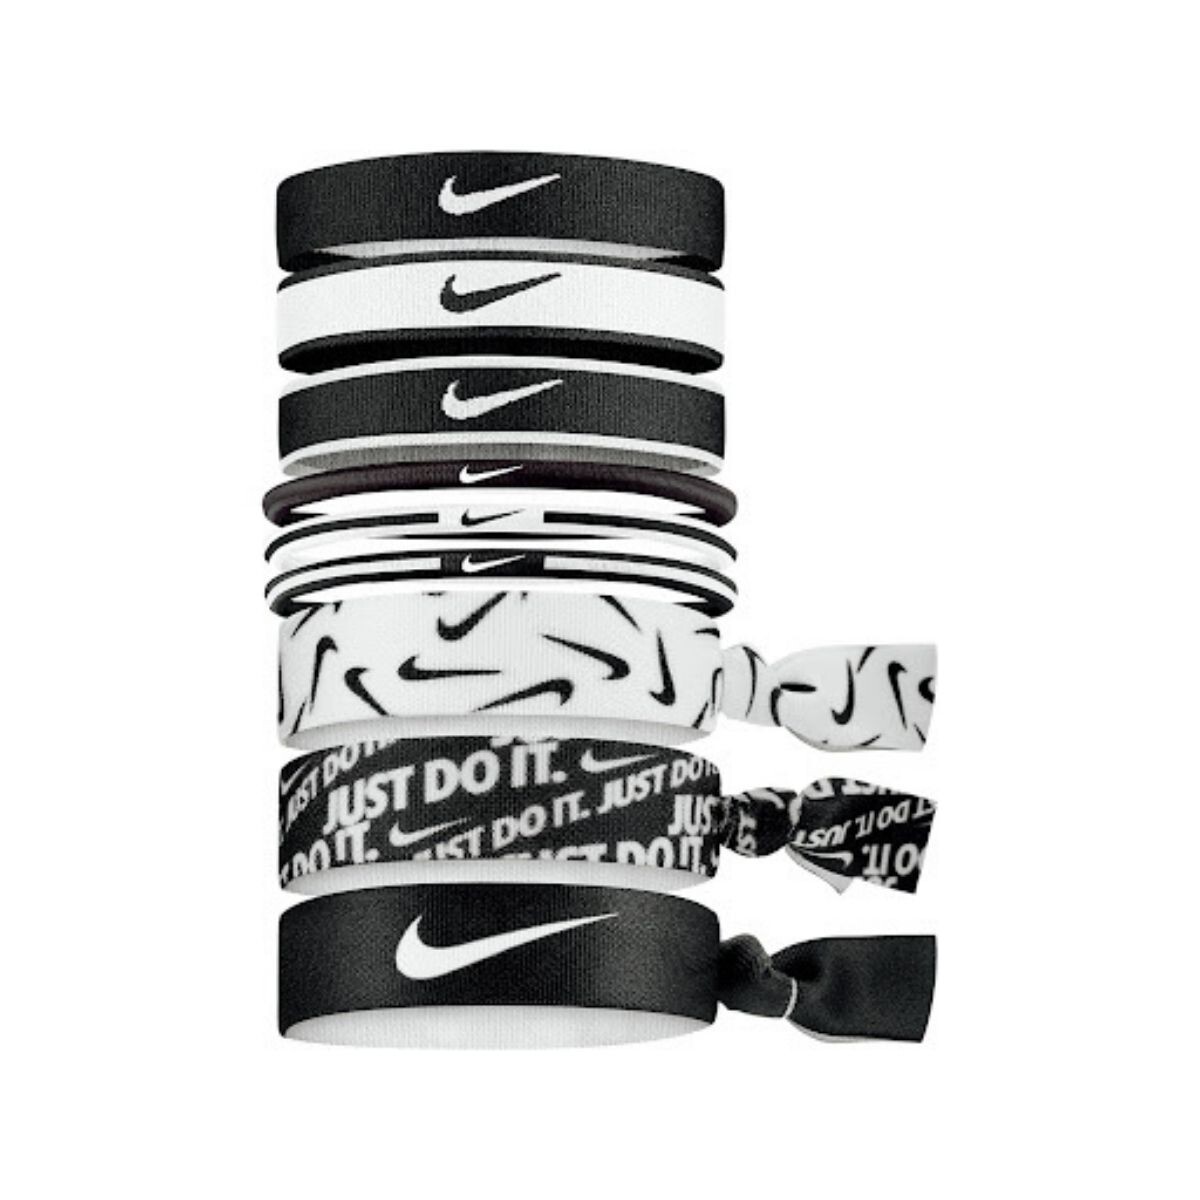 Coleros Nike Training Unisex Mixed Hairbands 9 PK - Color Único 